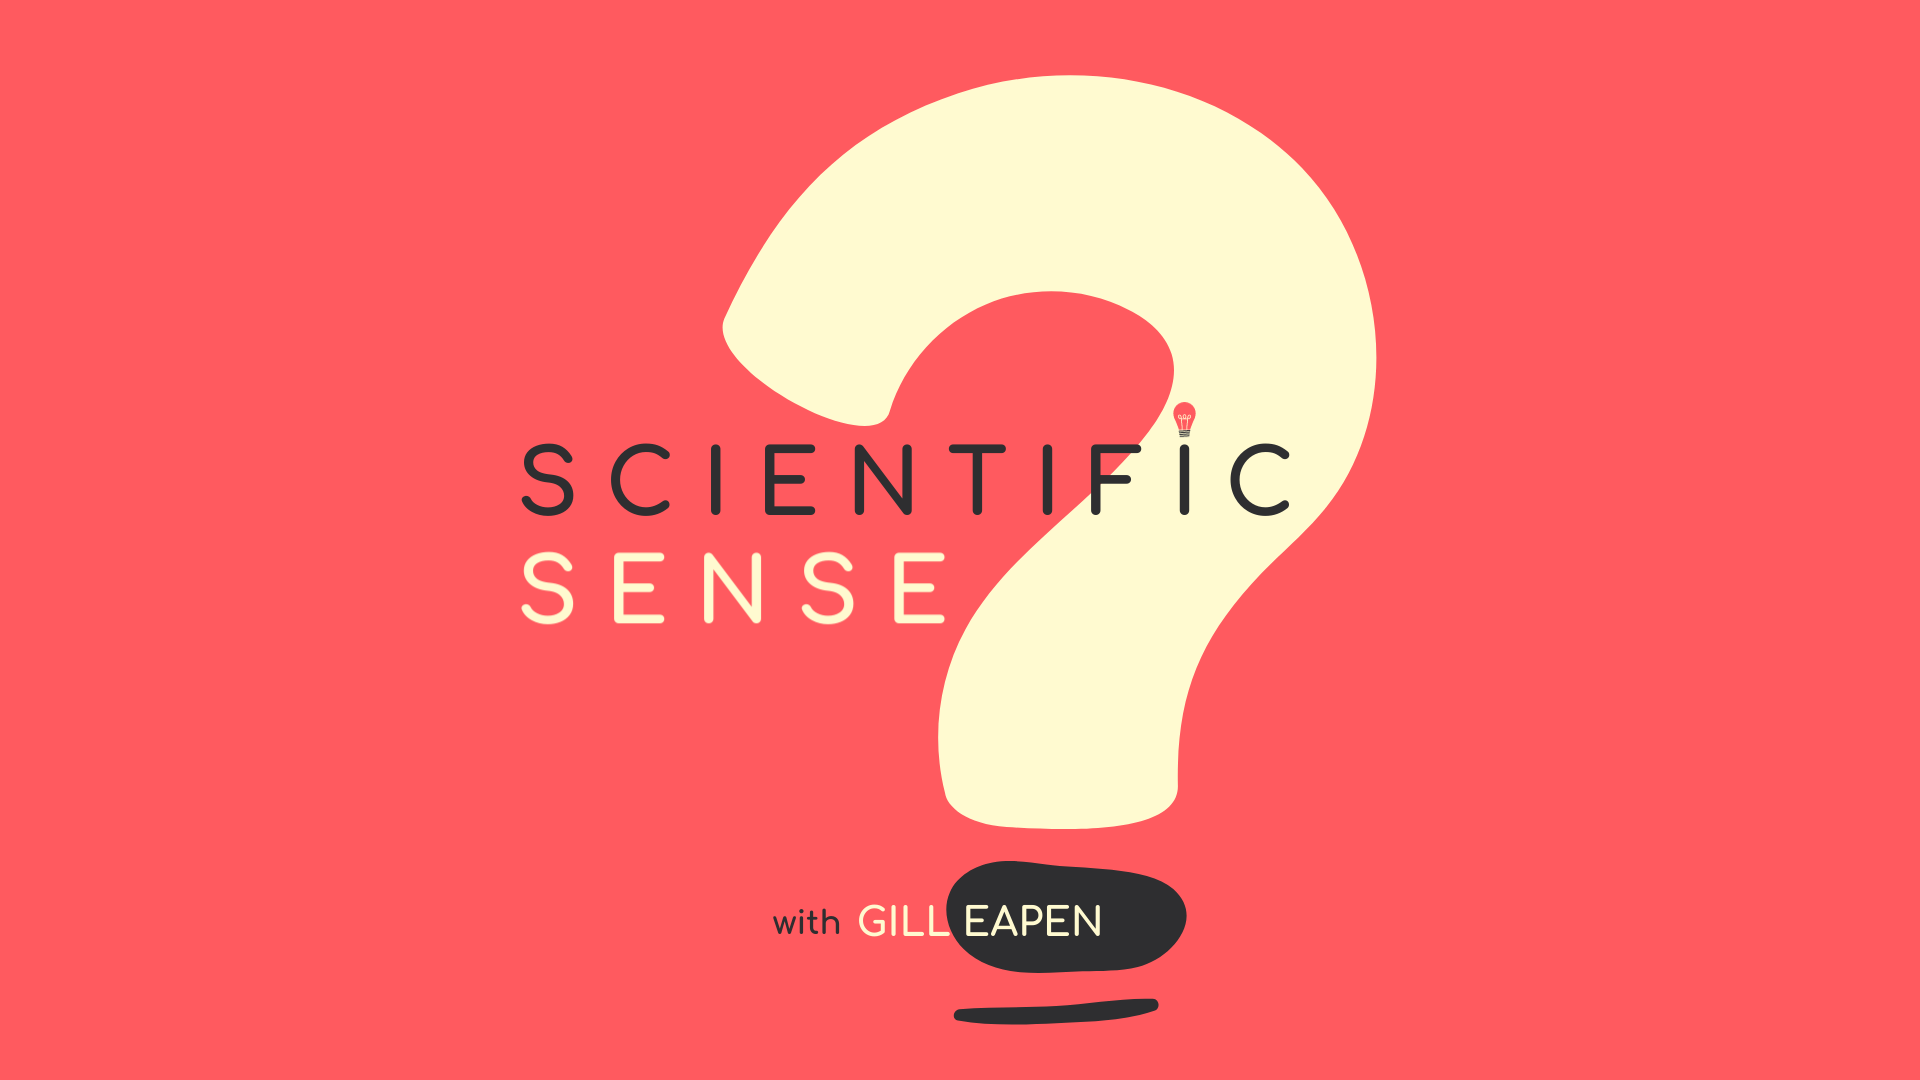 Scientific Sense ®